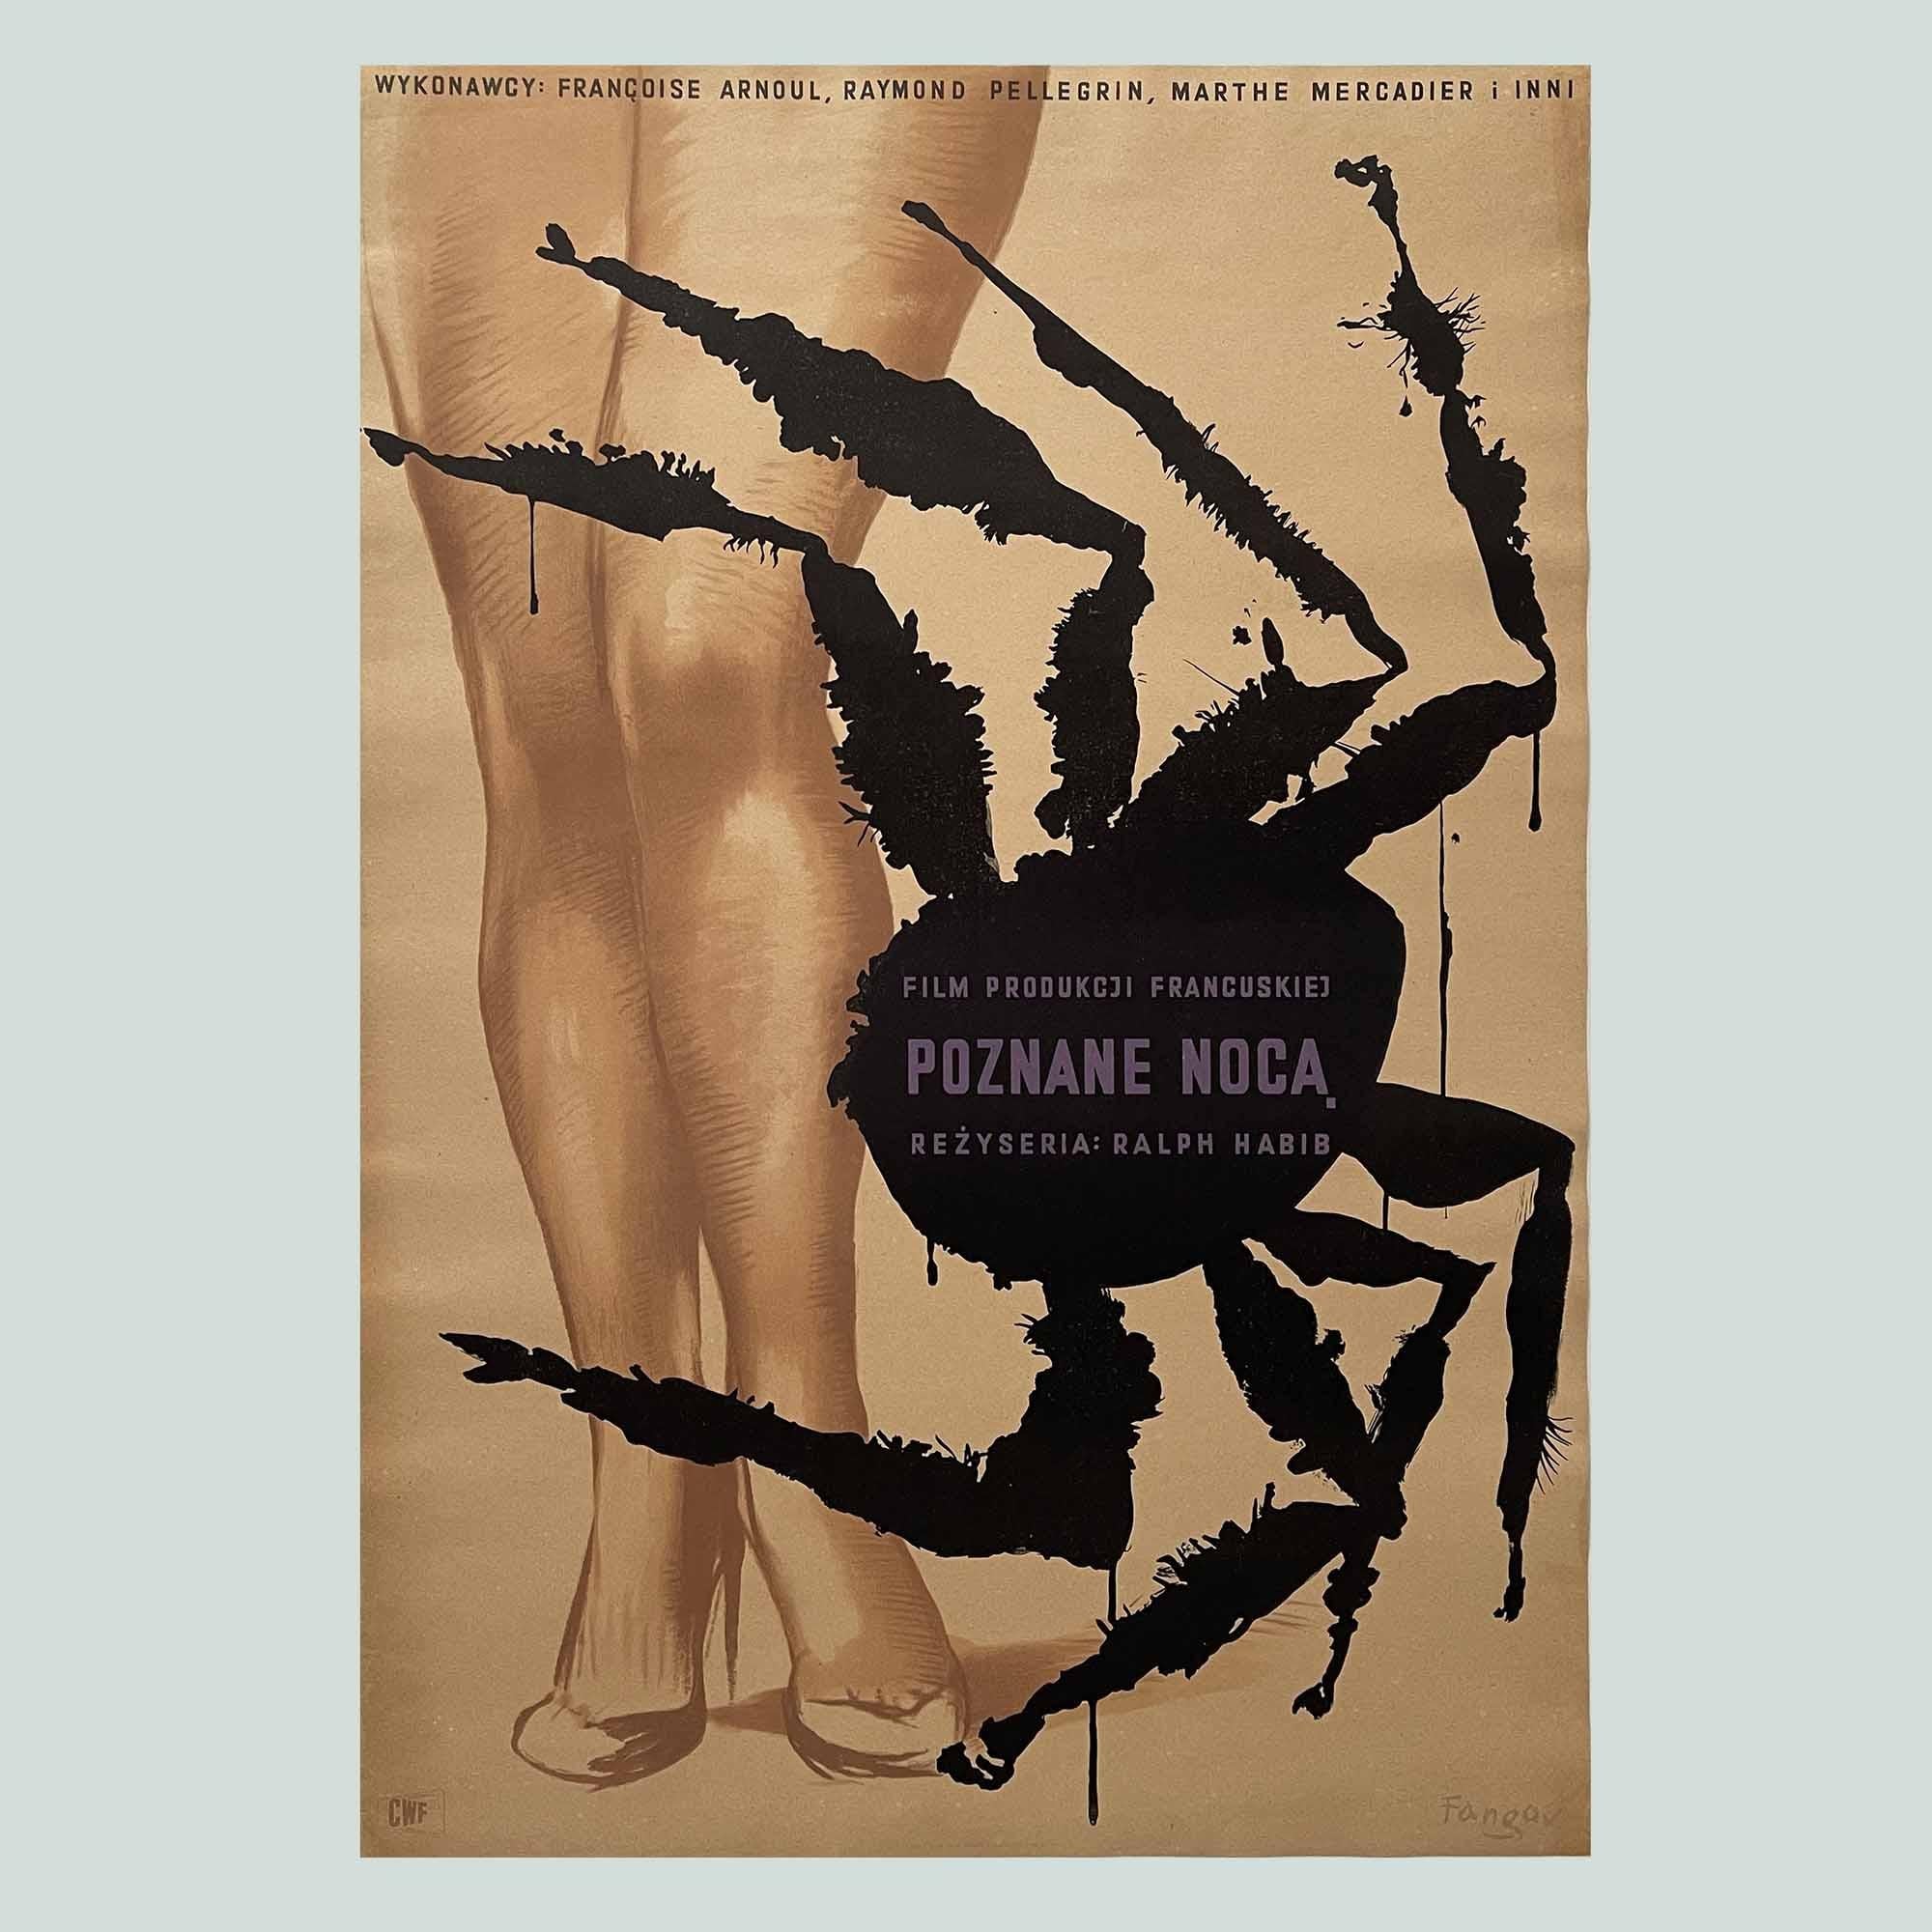 Dies ist ein seltenes und gesuchtes polnisches Filmplakat, das von dem berühmten polnischen Plakatkünstler Wojciech Fangor entworfen wurde. Er entwarf dieses Originalplakat von 1956 für den französischen Film 